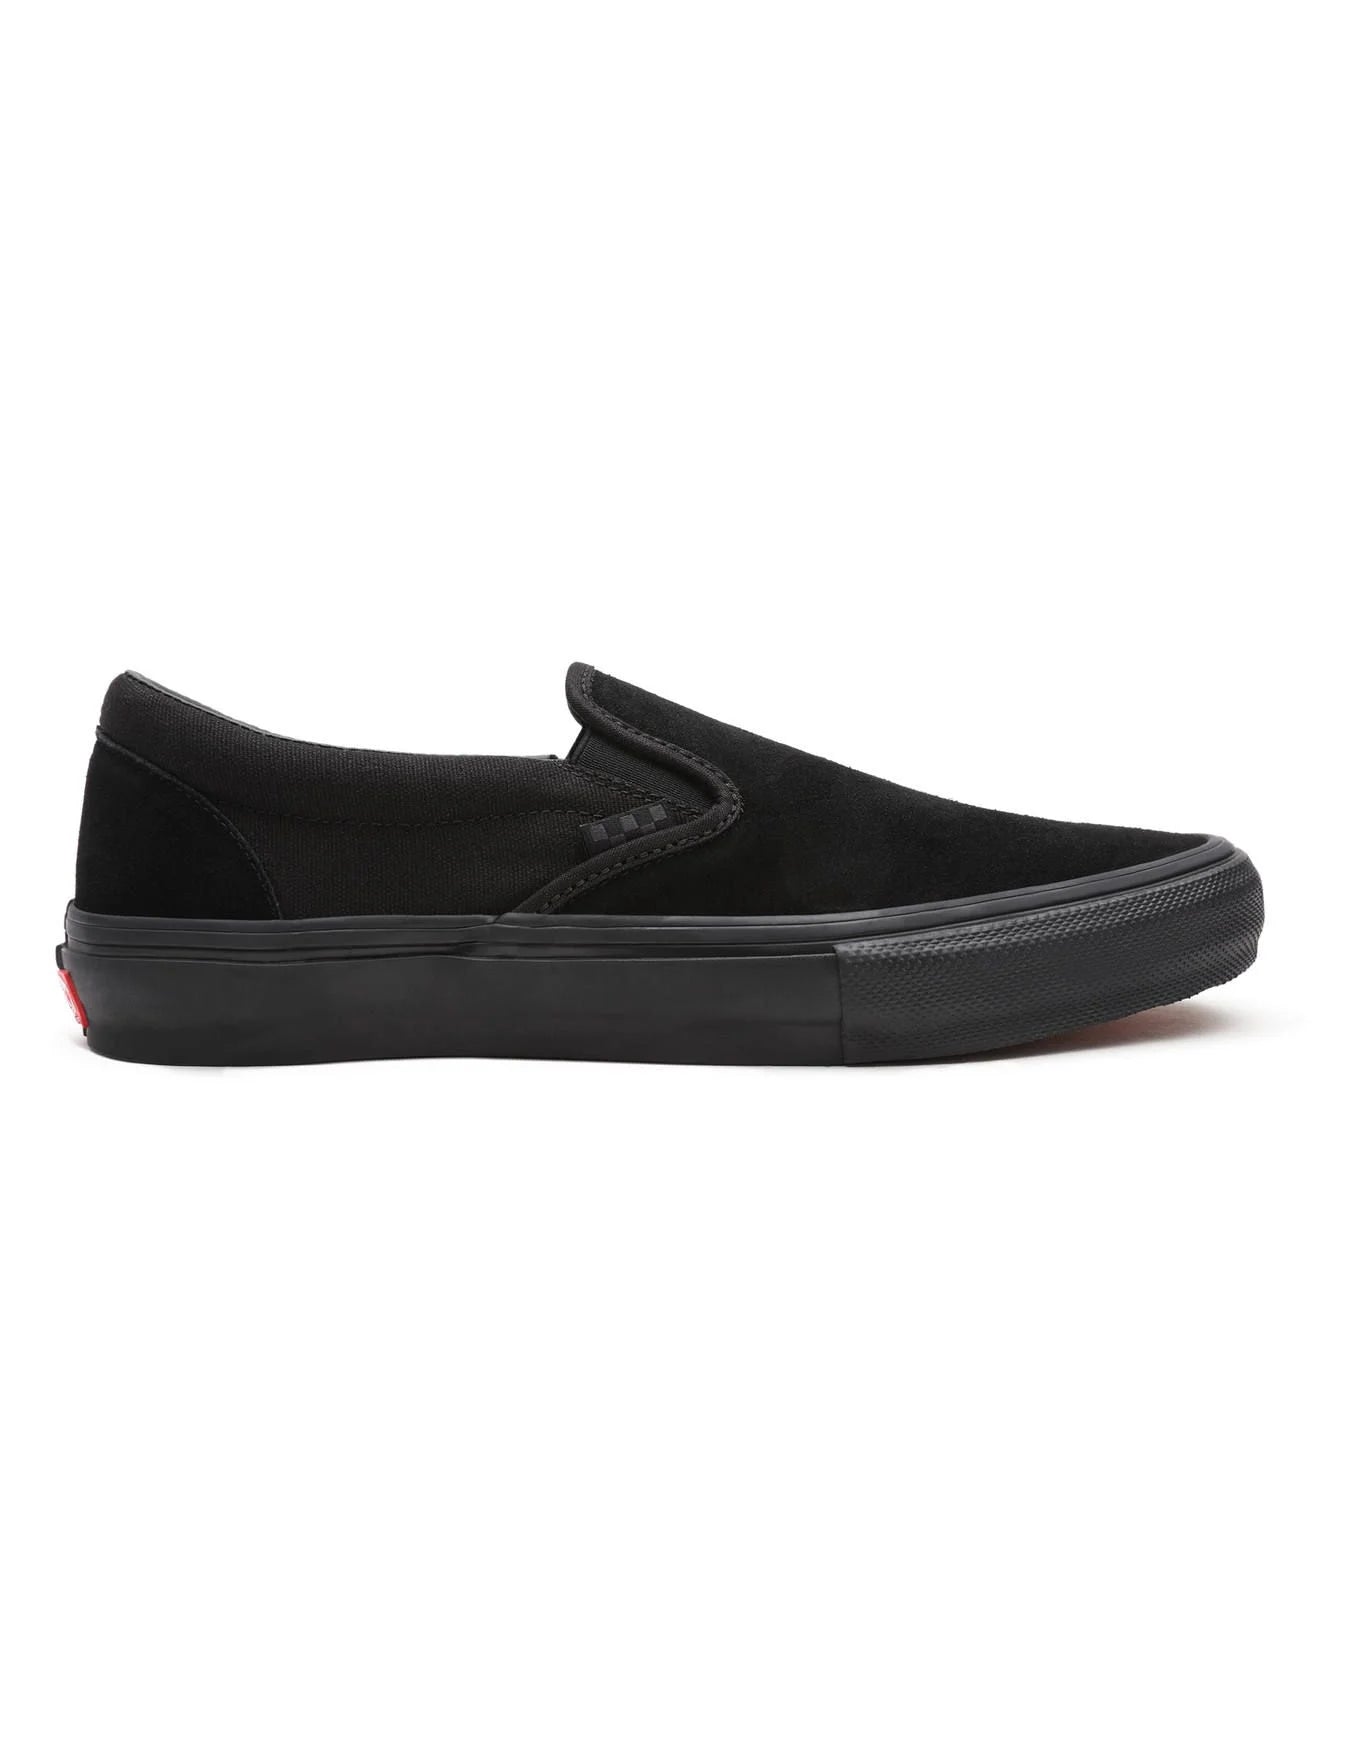 Vans Skate Slip-On Black/Black